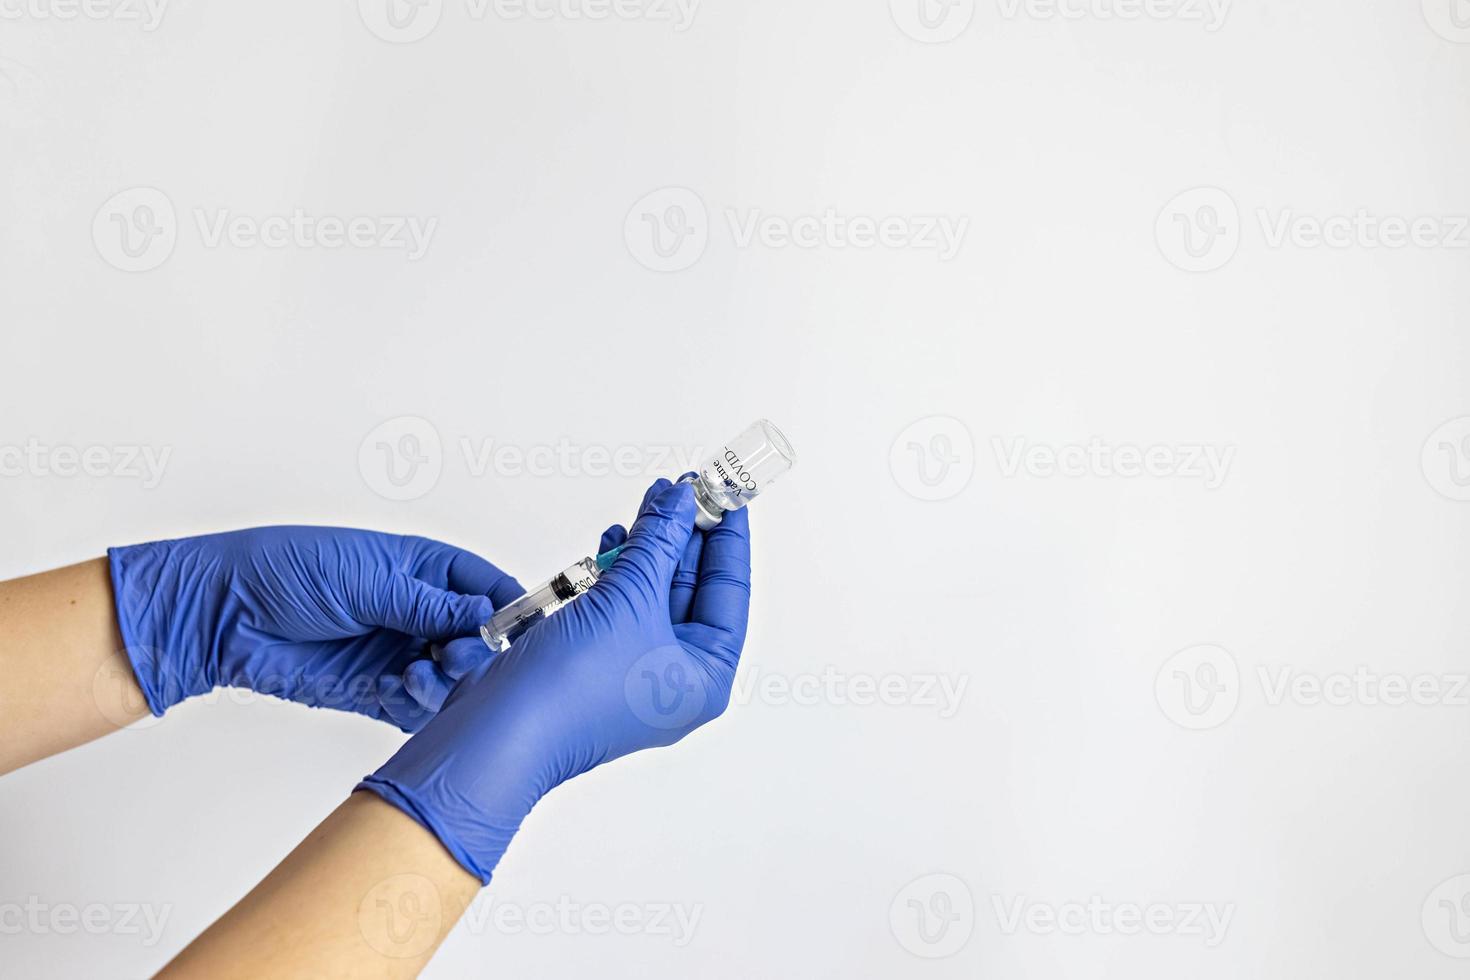 un trabajador médico con guantes médicos extrae una dosis de la vacuna contra el coronavirus en una jeringa. el concepto de vacunación, inmunización, prevención de personas contra el covid-19 foto